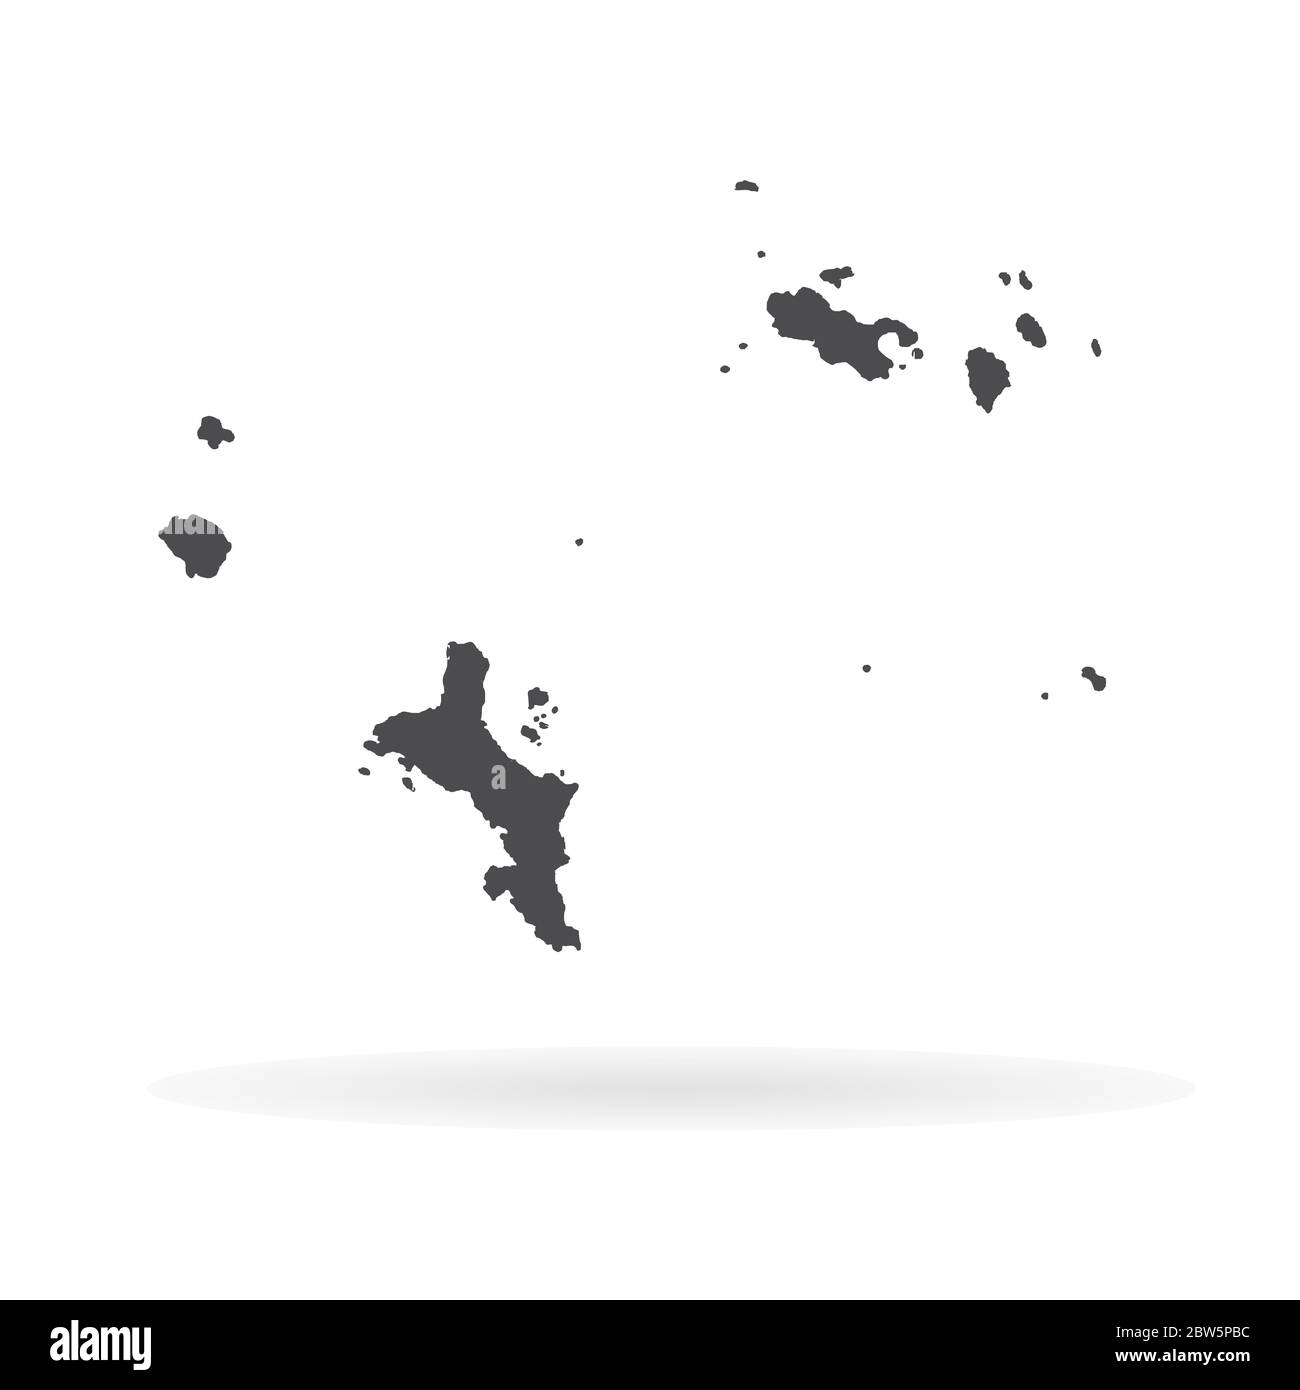 Vektorkarte Seychellen und Victoria. Isolierte Vektorgrafik. Schwarz auf weißem Hintergrund. EPS 10-Abbildung. Stock Vektor